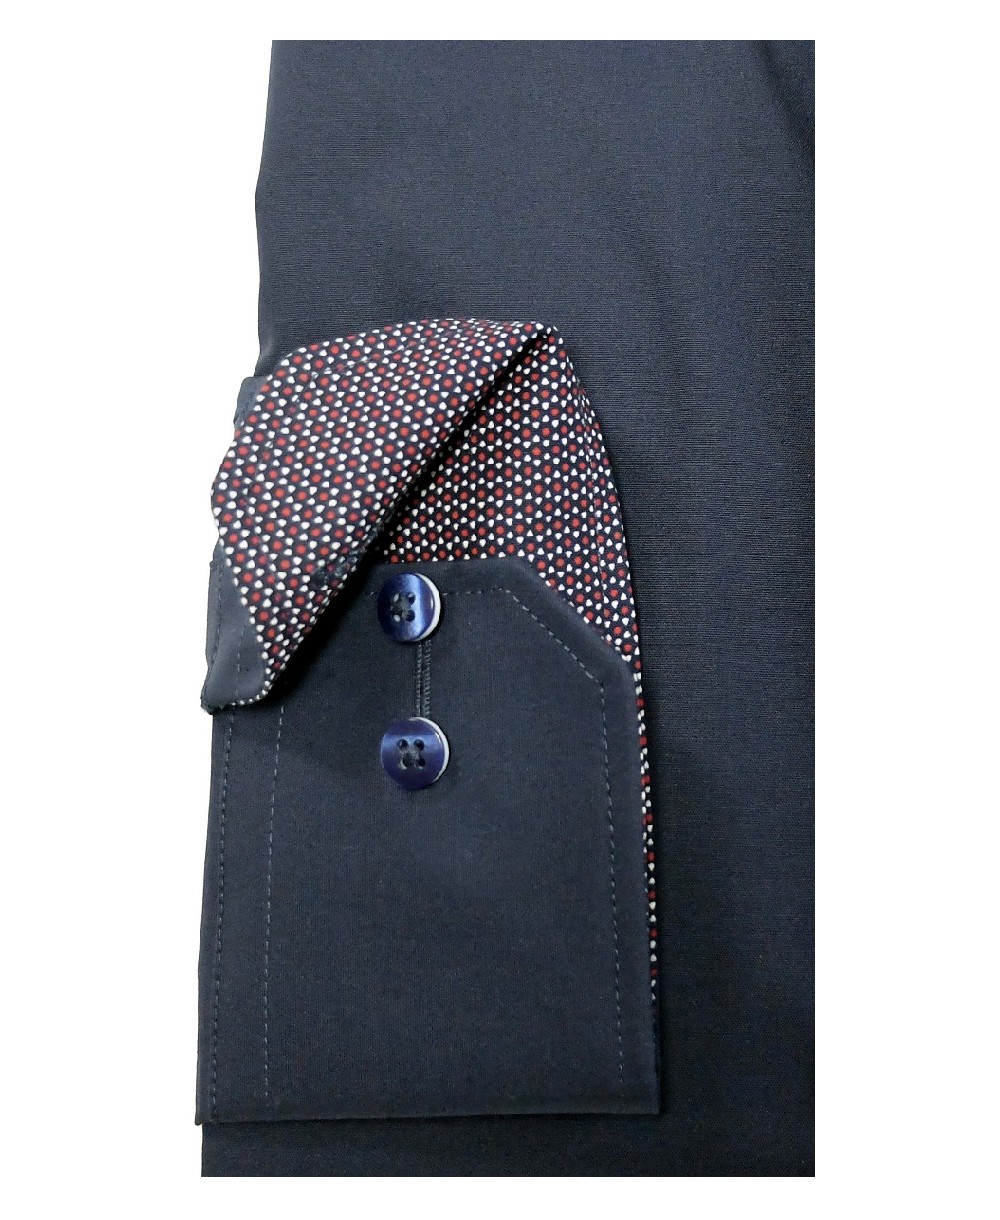 Herrenmode Hochwertige dunkelblau - führender Comfort eterna Marken Brusttasche zu Fit fairen mit Langarmhemd